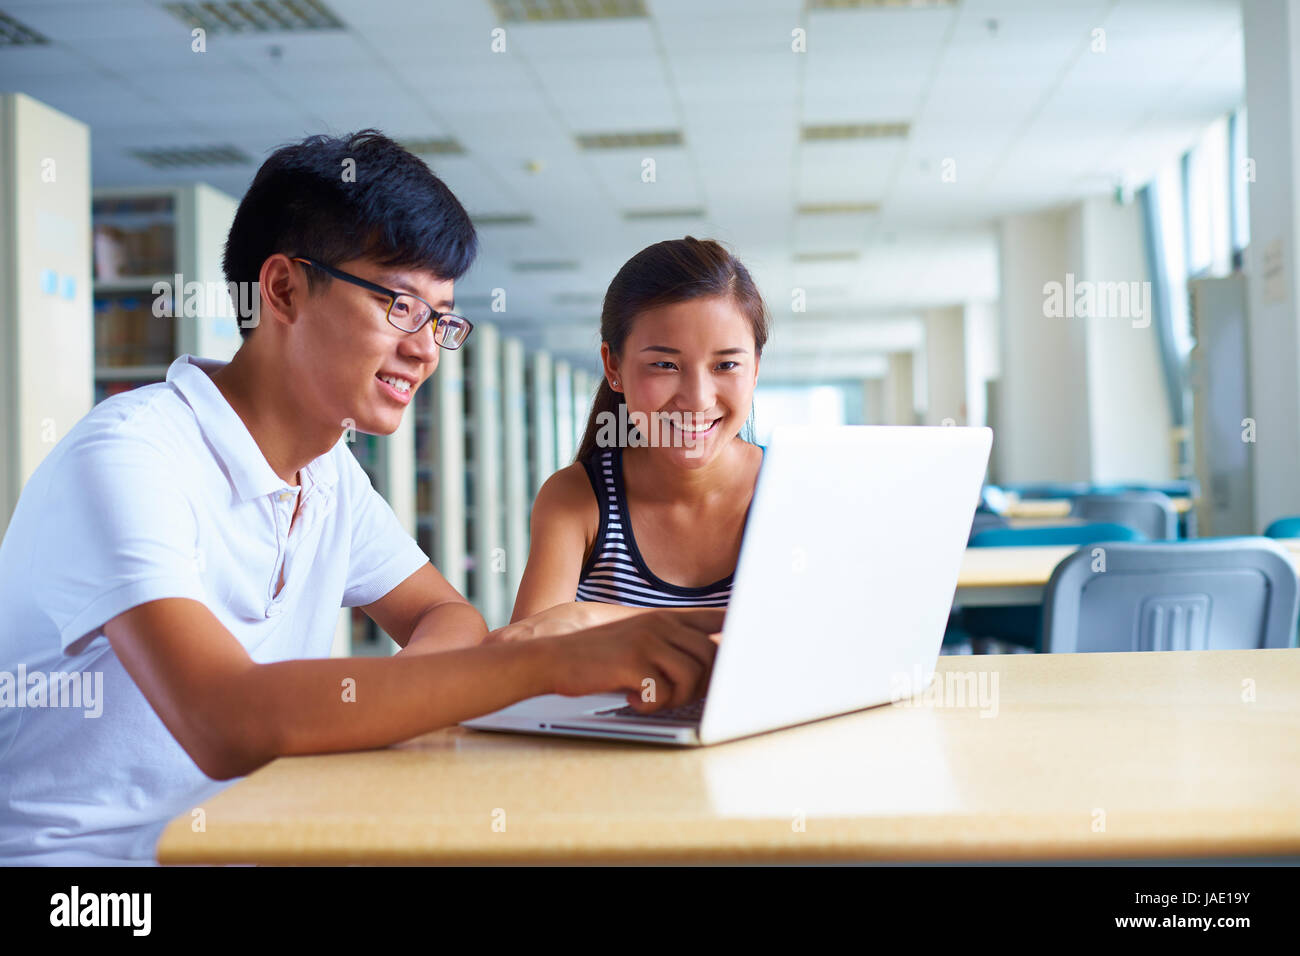 Glückliche junge chinesische oder asiatische Studenten studieren gemeinsam in der Bibliothek mit Computer oder laptop Stockfoto